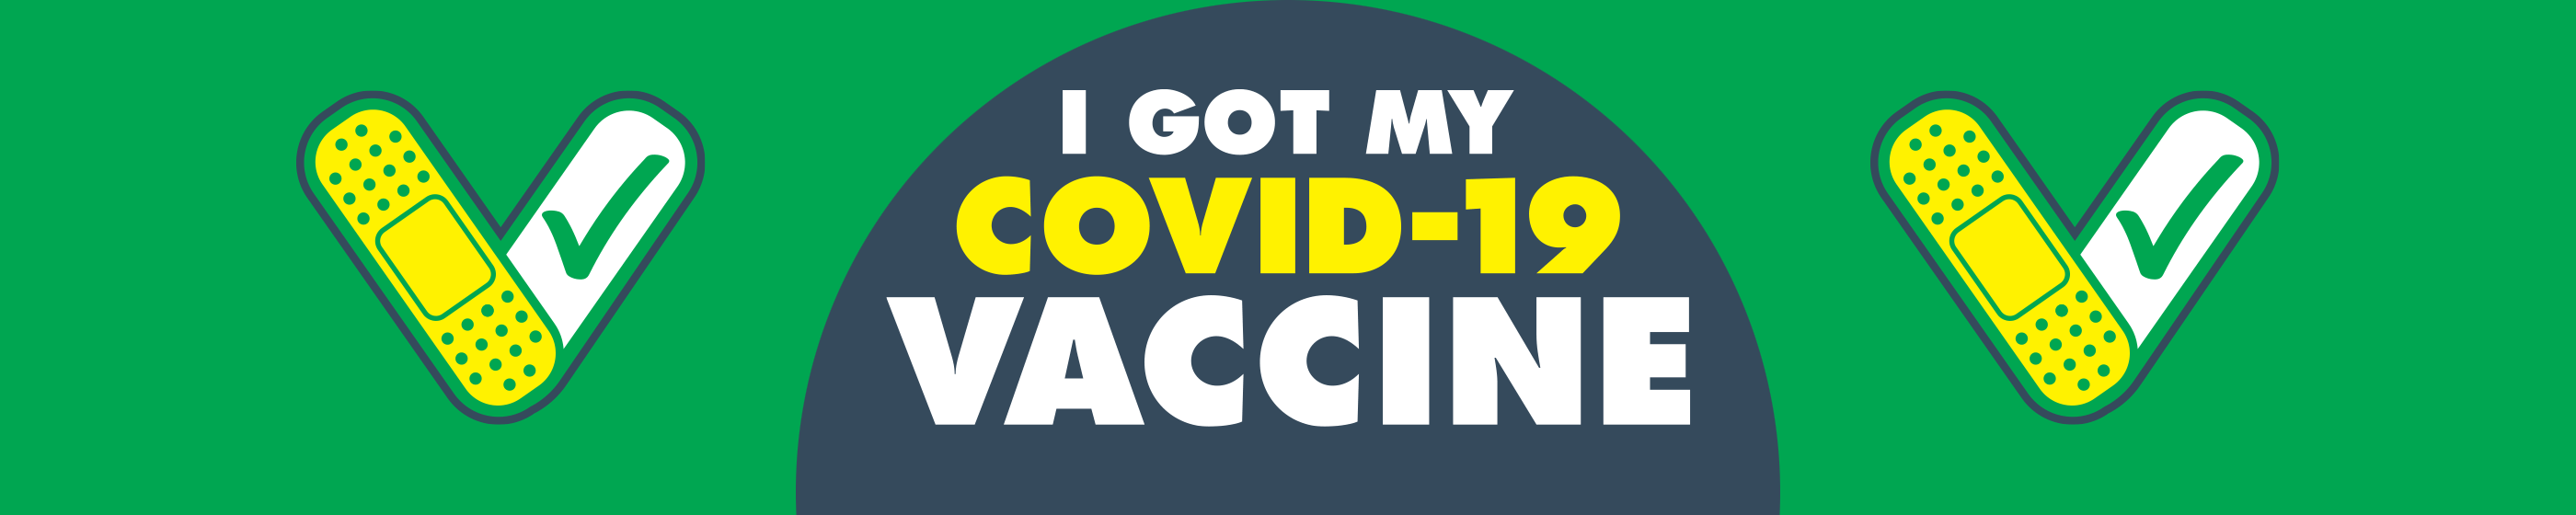 I Got My COVID-19 Vaccine Button Cover Image